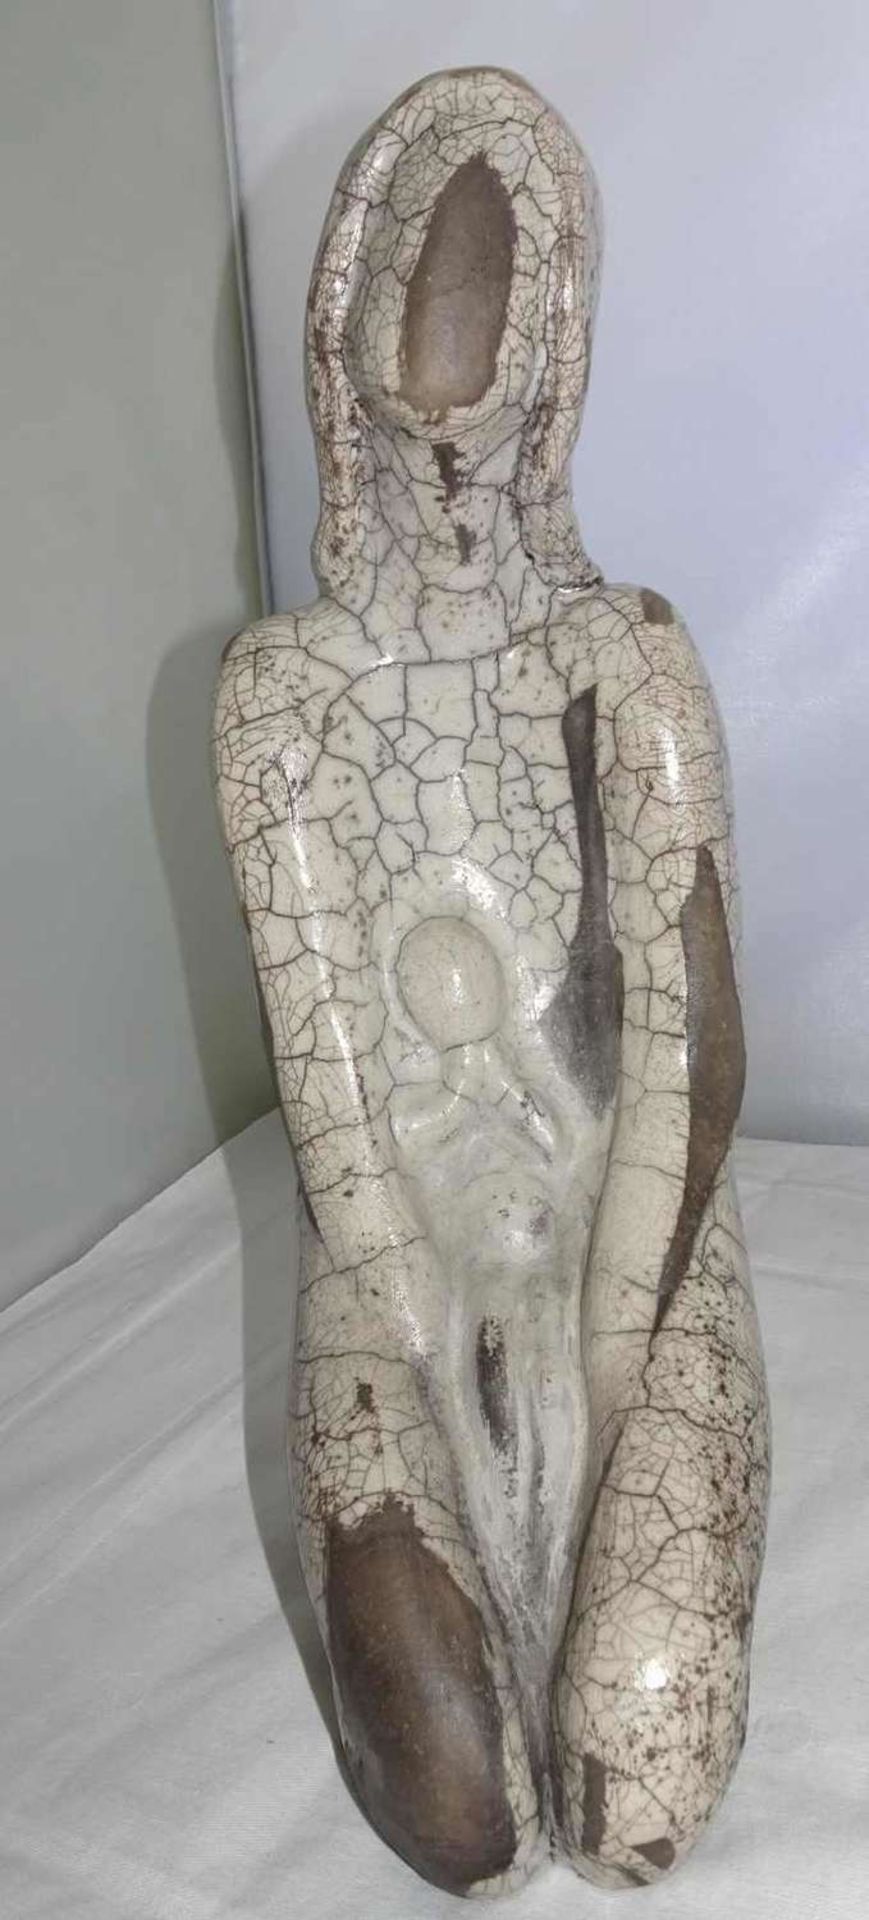 ausgefallen Keramikfigur "Mutter & Kind" , Krakelle Glasur, ohne Signatur, Höhe ca. 31cmunusual